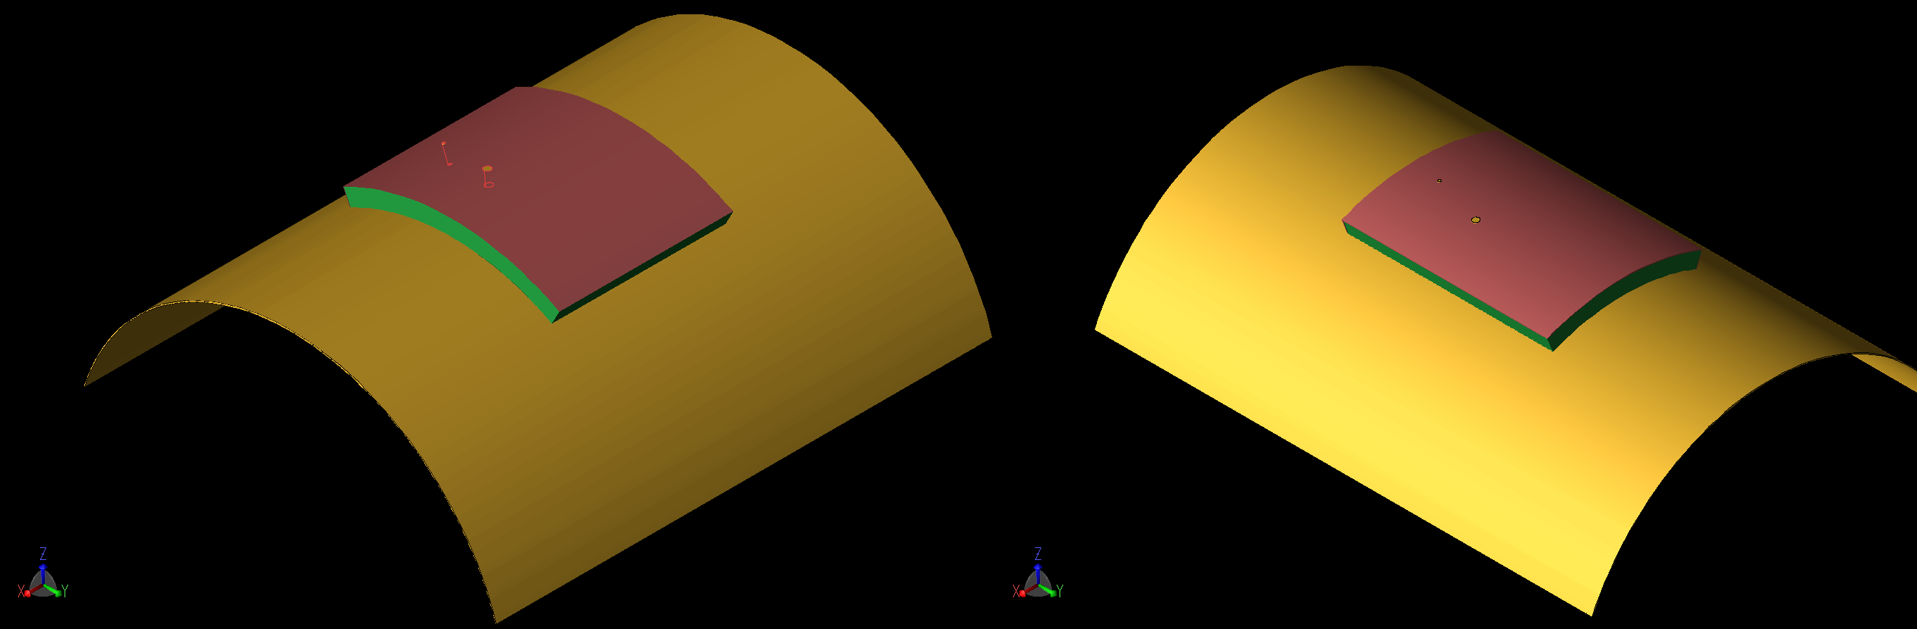 図7：曲率半径40mmの湾曲したパッチを示す。左（7a）はX軸周りの曲率、右（7b）はY軸周りの曲率である。同様の形状は、曲率半径80mmの場合にもシミュレーションされた。